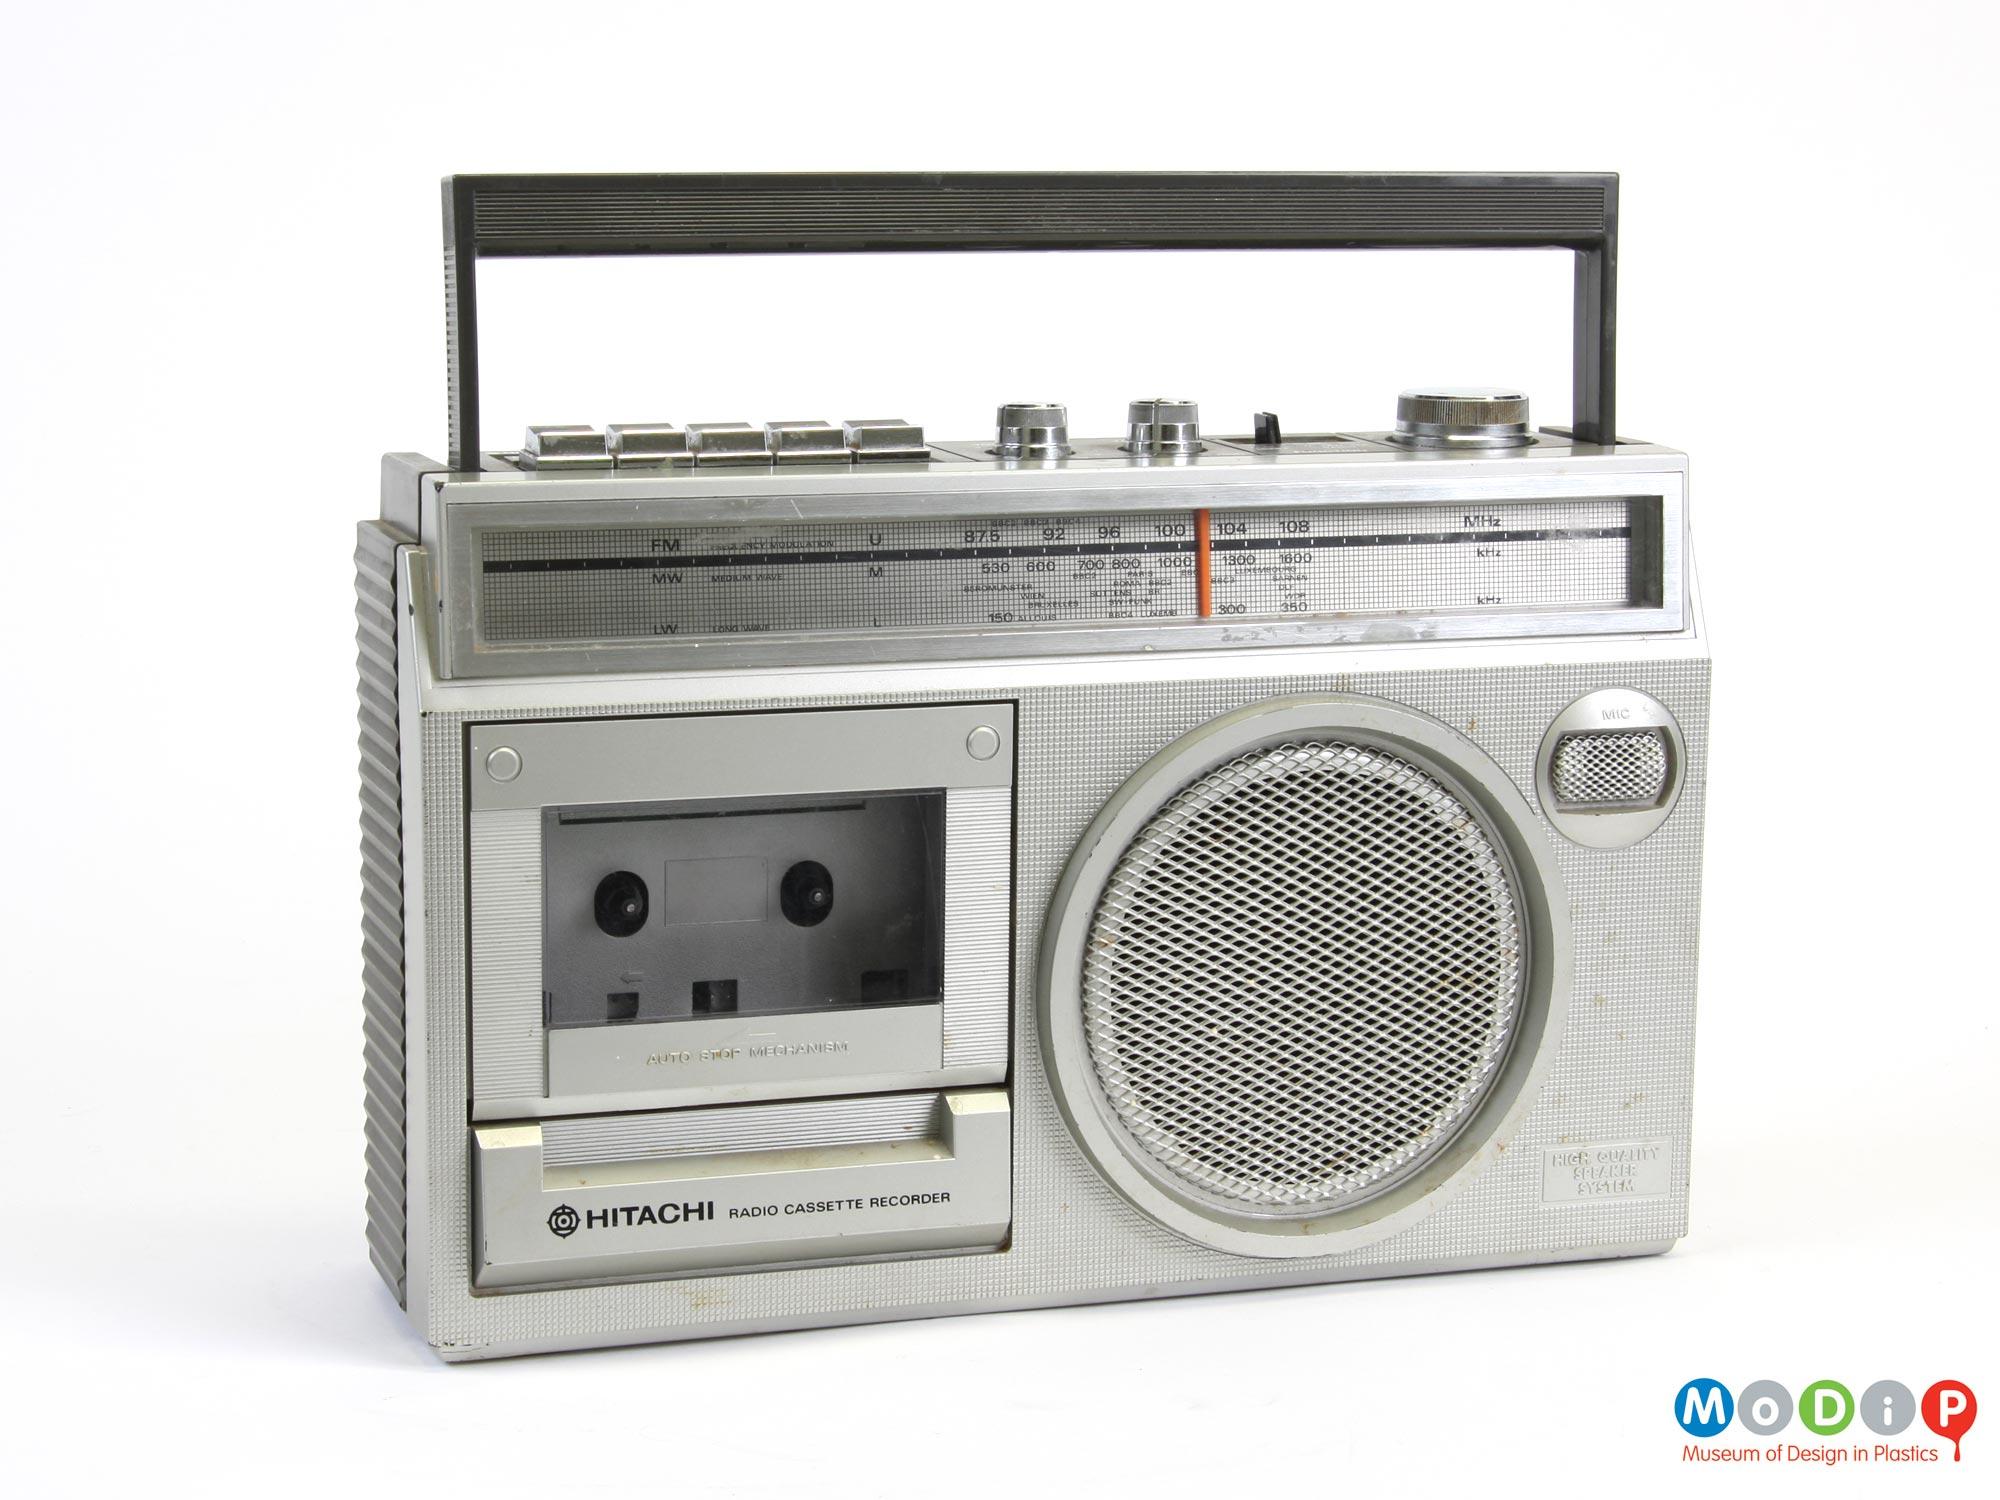 Hitachi TRK 5351L radio cassette recorder | Museum of Design in Plastics